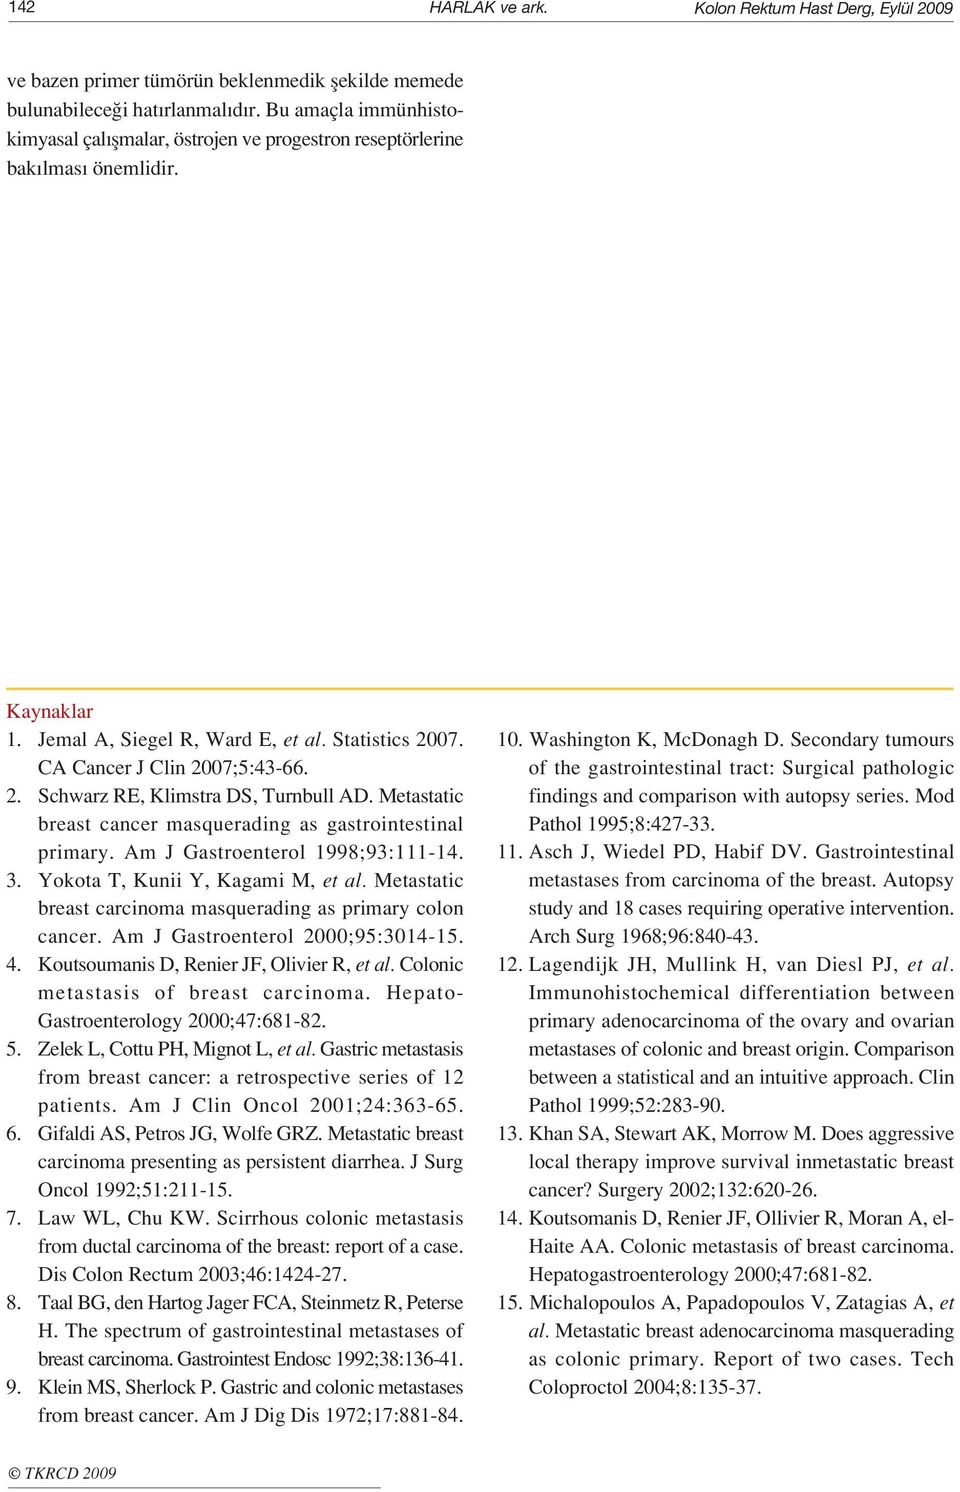 Metastatic breast cancer masquerading as gastrointestinal primary. Am J Gastroenterol 1998;93:111-14. 3. Yokota T, Kunii Y, Kagami M, et al.